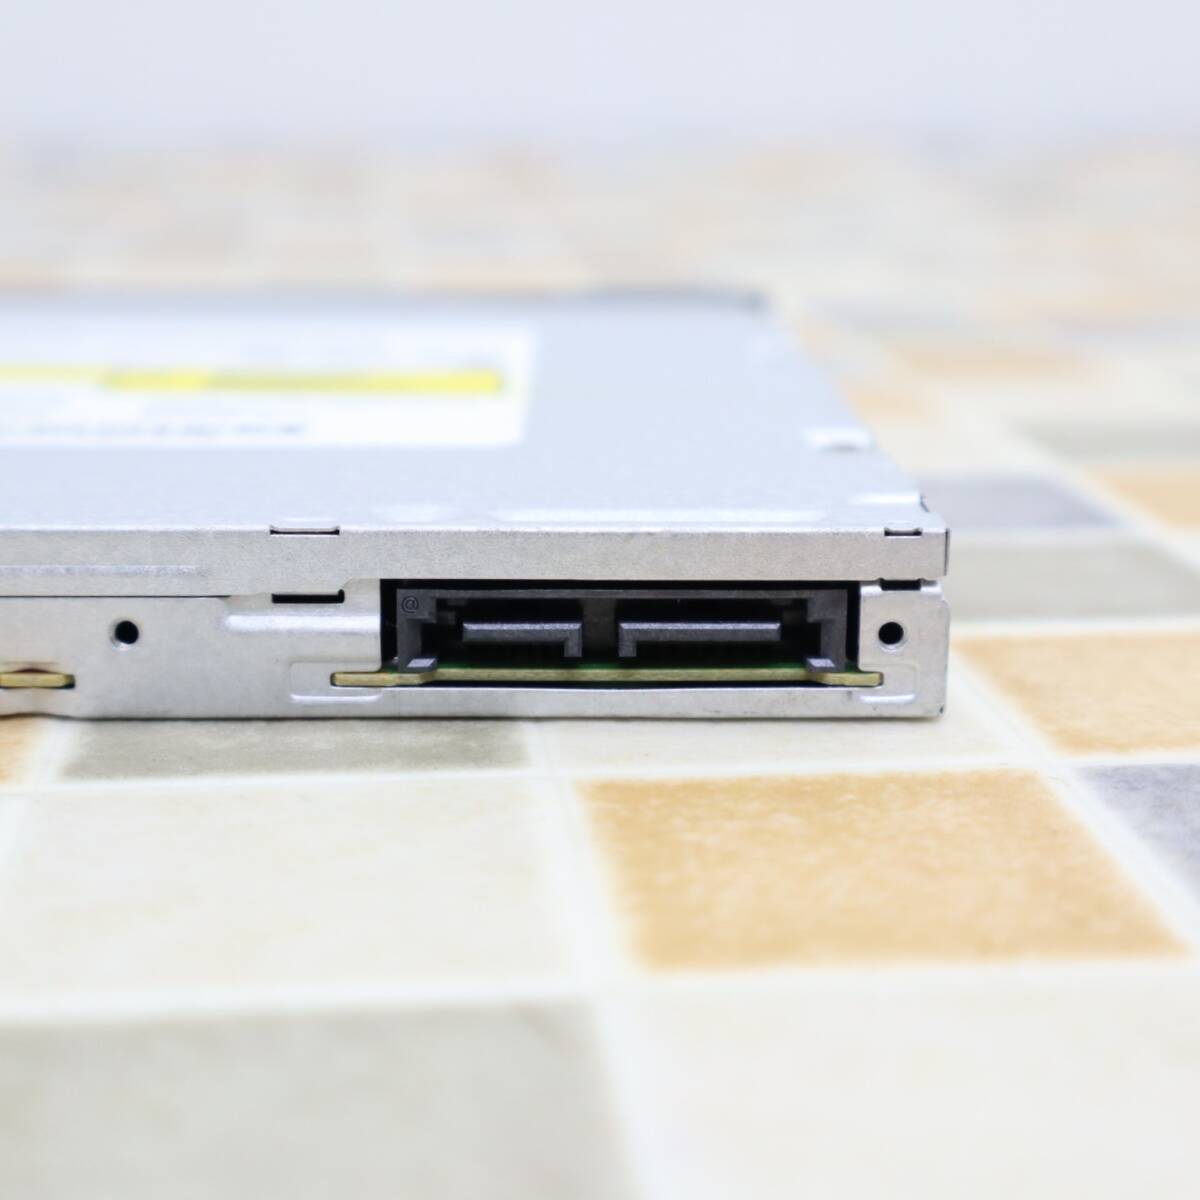 * 12.7mmlDVD мульти- накопитель на оптических дисках lHP SN-108 EliteDisk 800 G1 USTD удален l считывание подтверждено #O6151